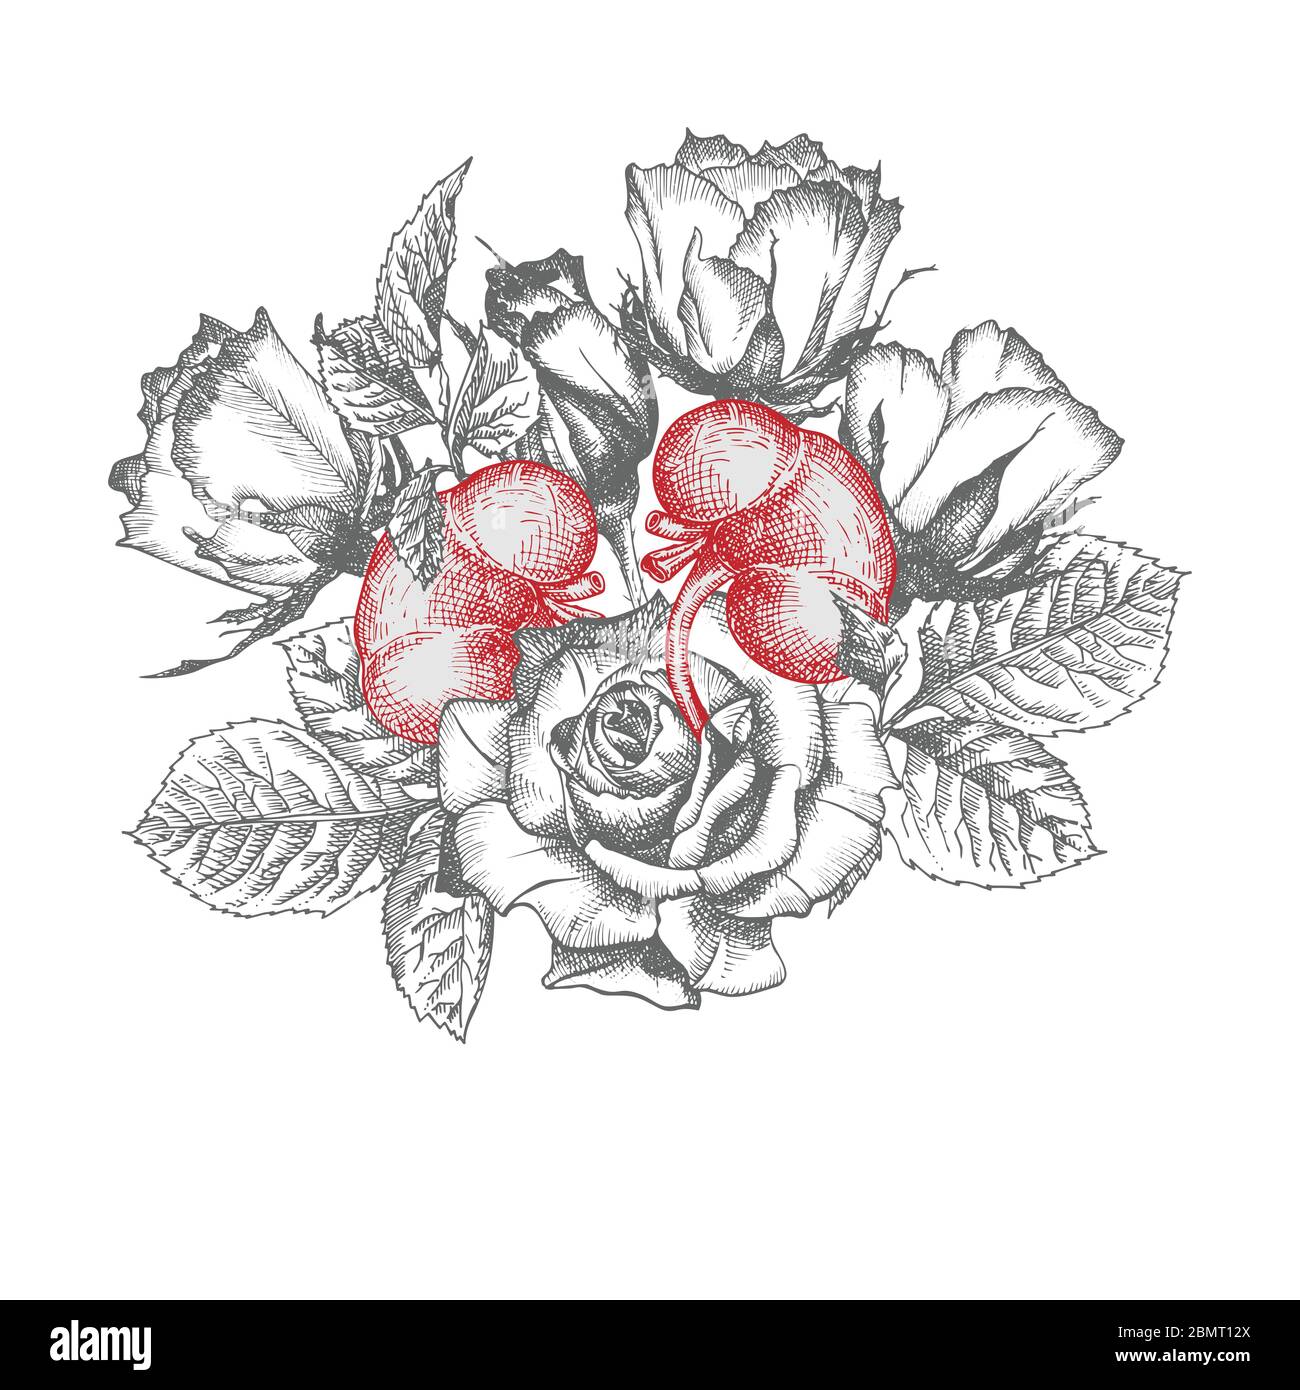 Rein avec bouquet de roses réaliste main-dessiné icône de l'organe interne humain et cadre de fleur gravure art. style d'esquisse. Concept de conception pour le médical Illustration de Vecteur